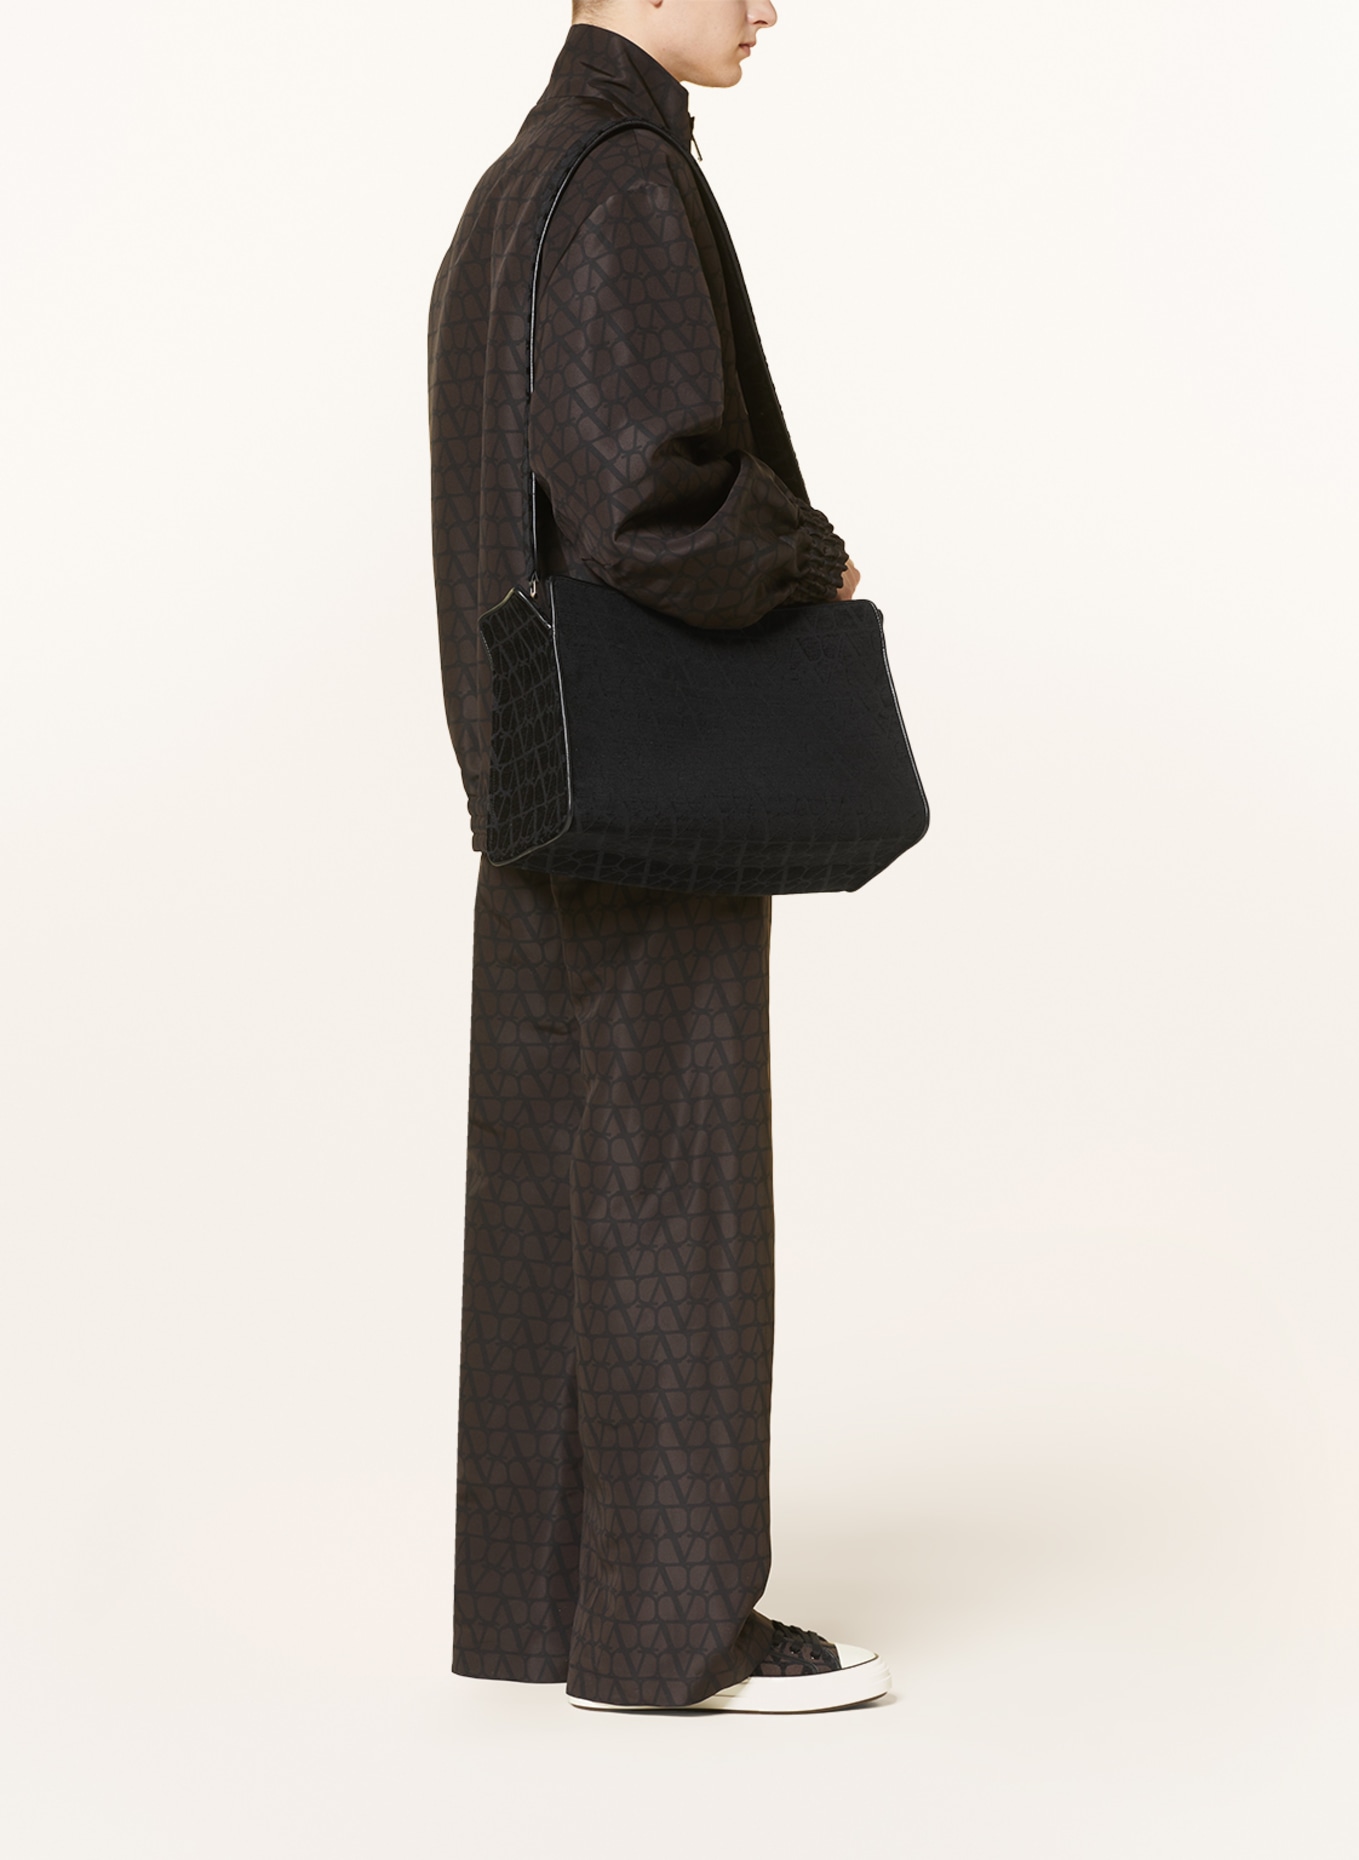 VALENTINO GARAVANI Shopper with pouch, Color: BLACK (Image 4)